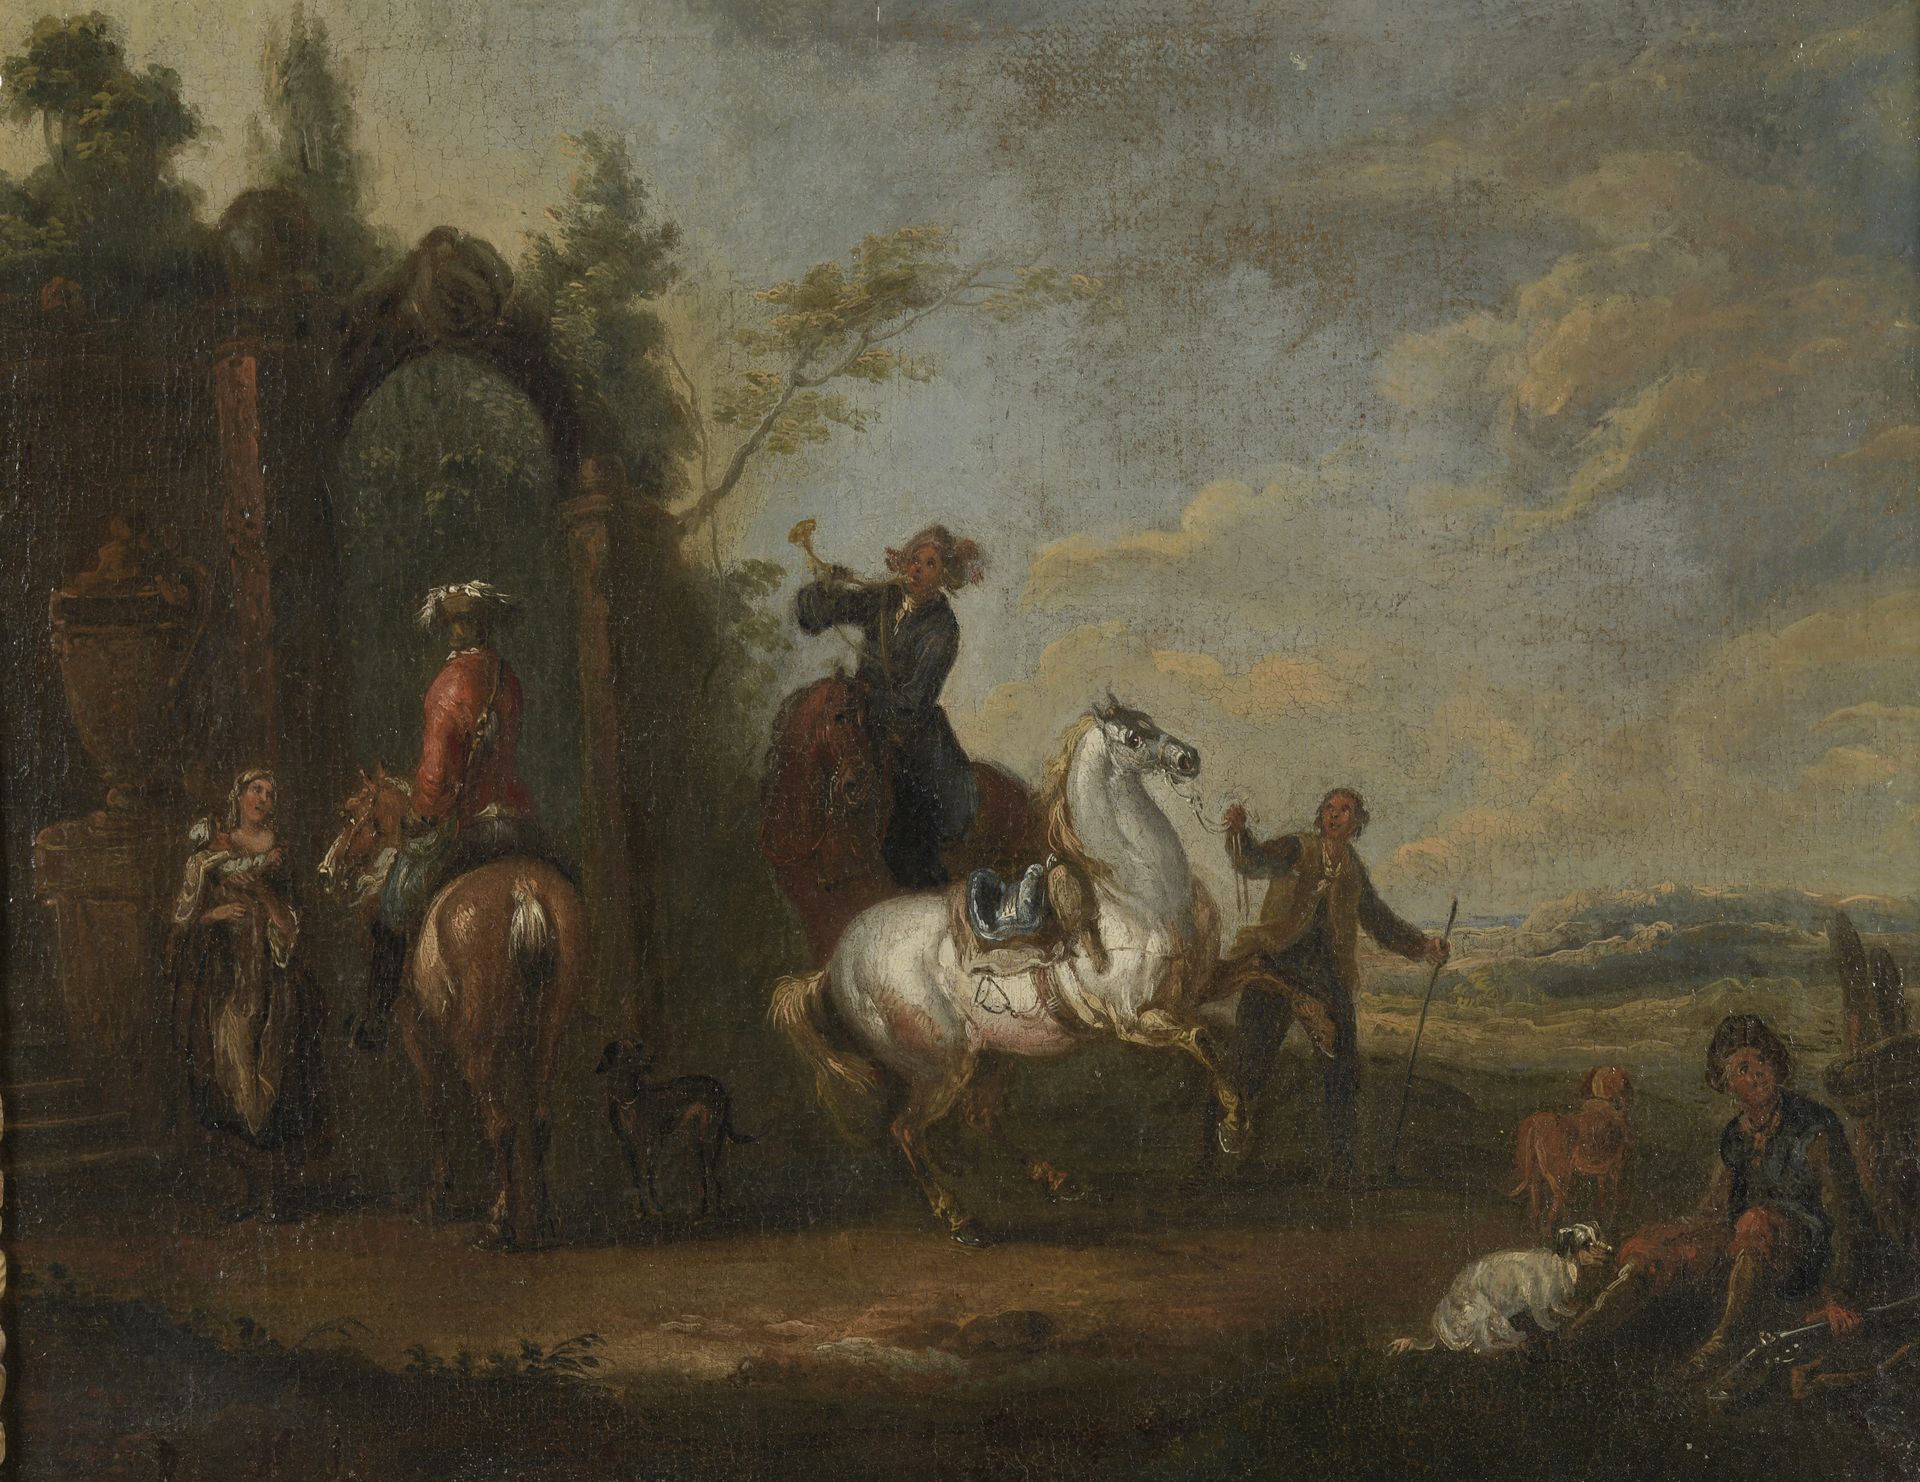 Null August QUERFURT (1696-1761) zugeschrieben

Die Reiter halten an

Reiter in &hellip;